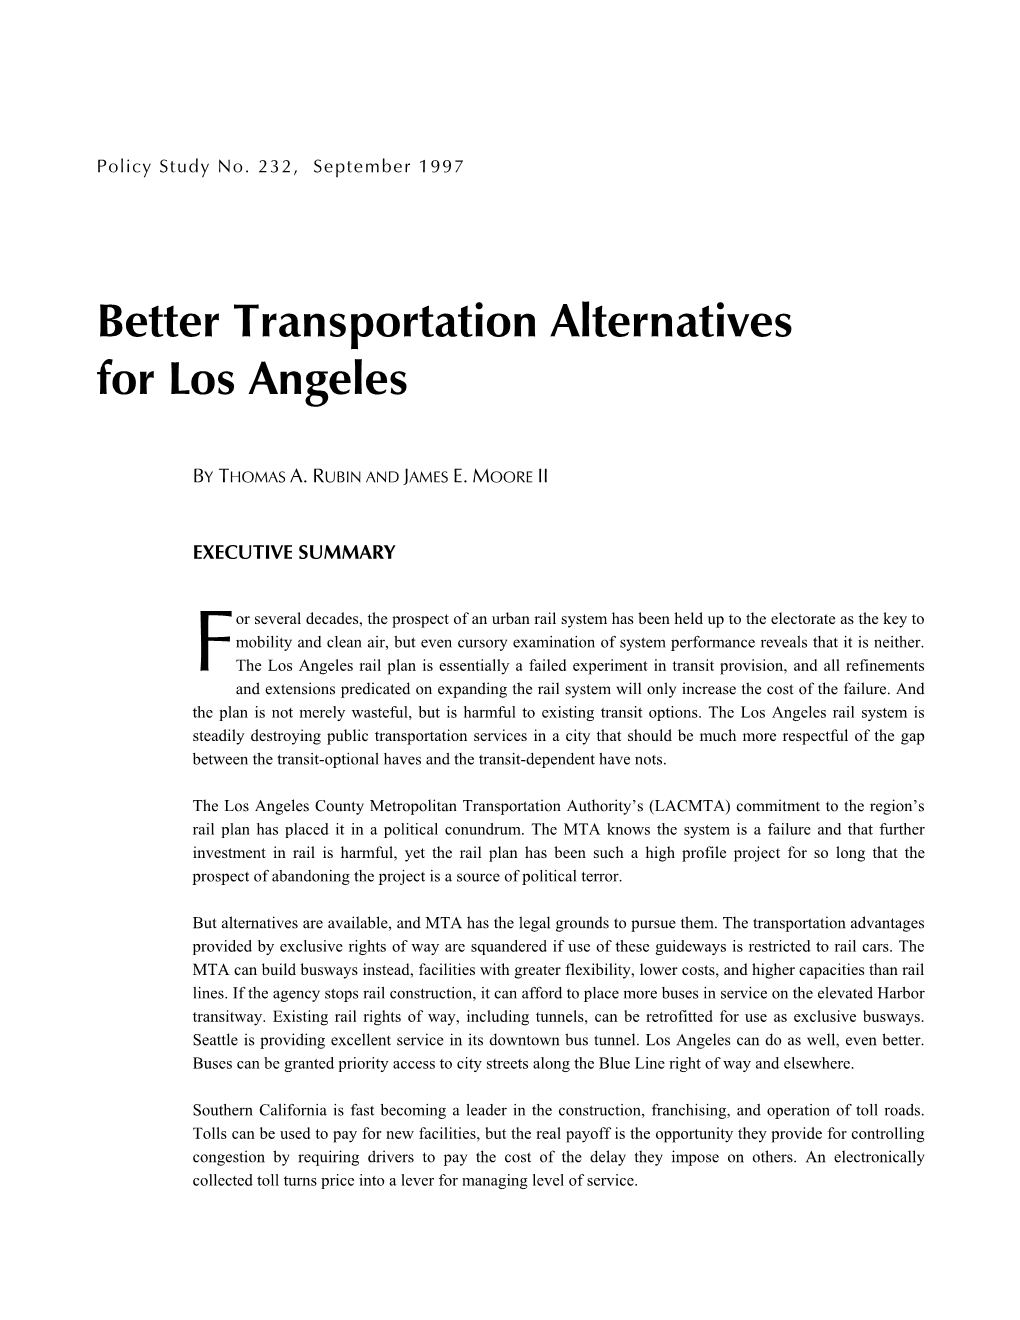 Better Transportation Alternatives for Los Angeles